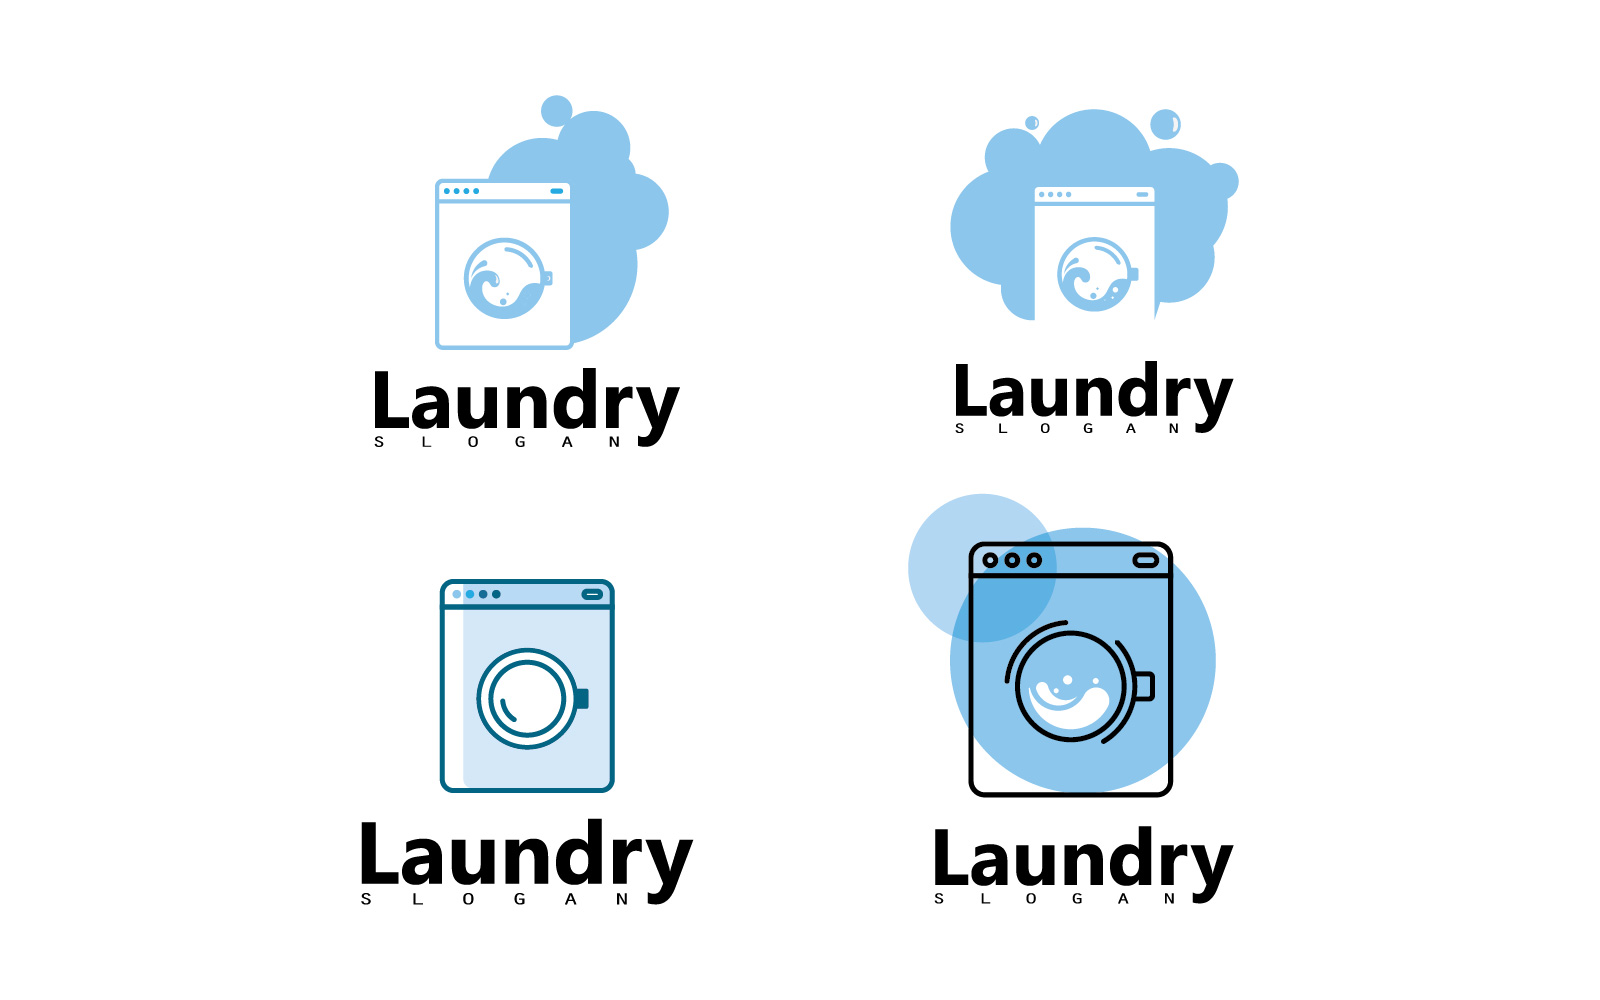 Washing machine laundry icon logo design V9